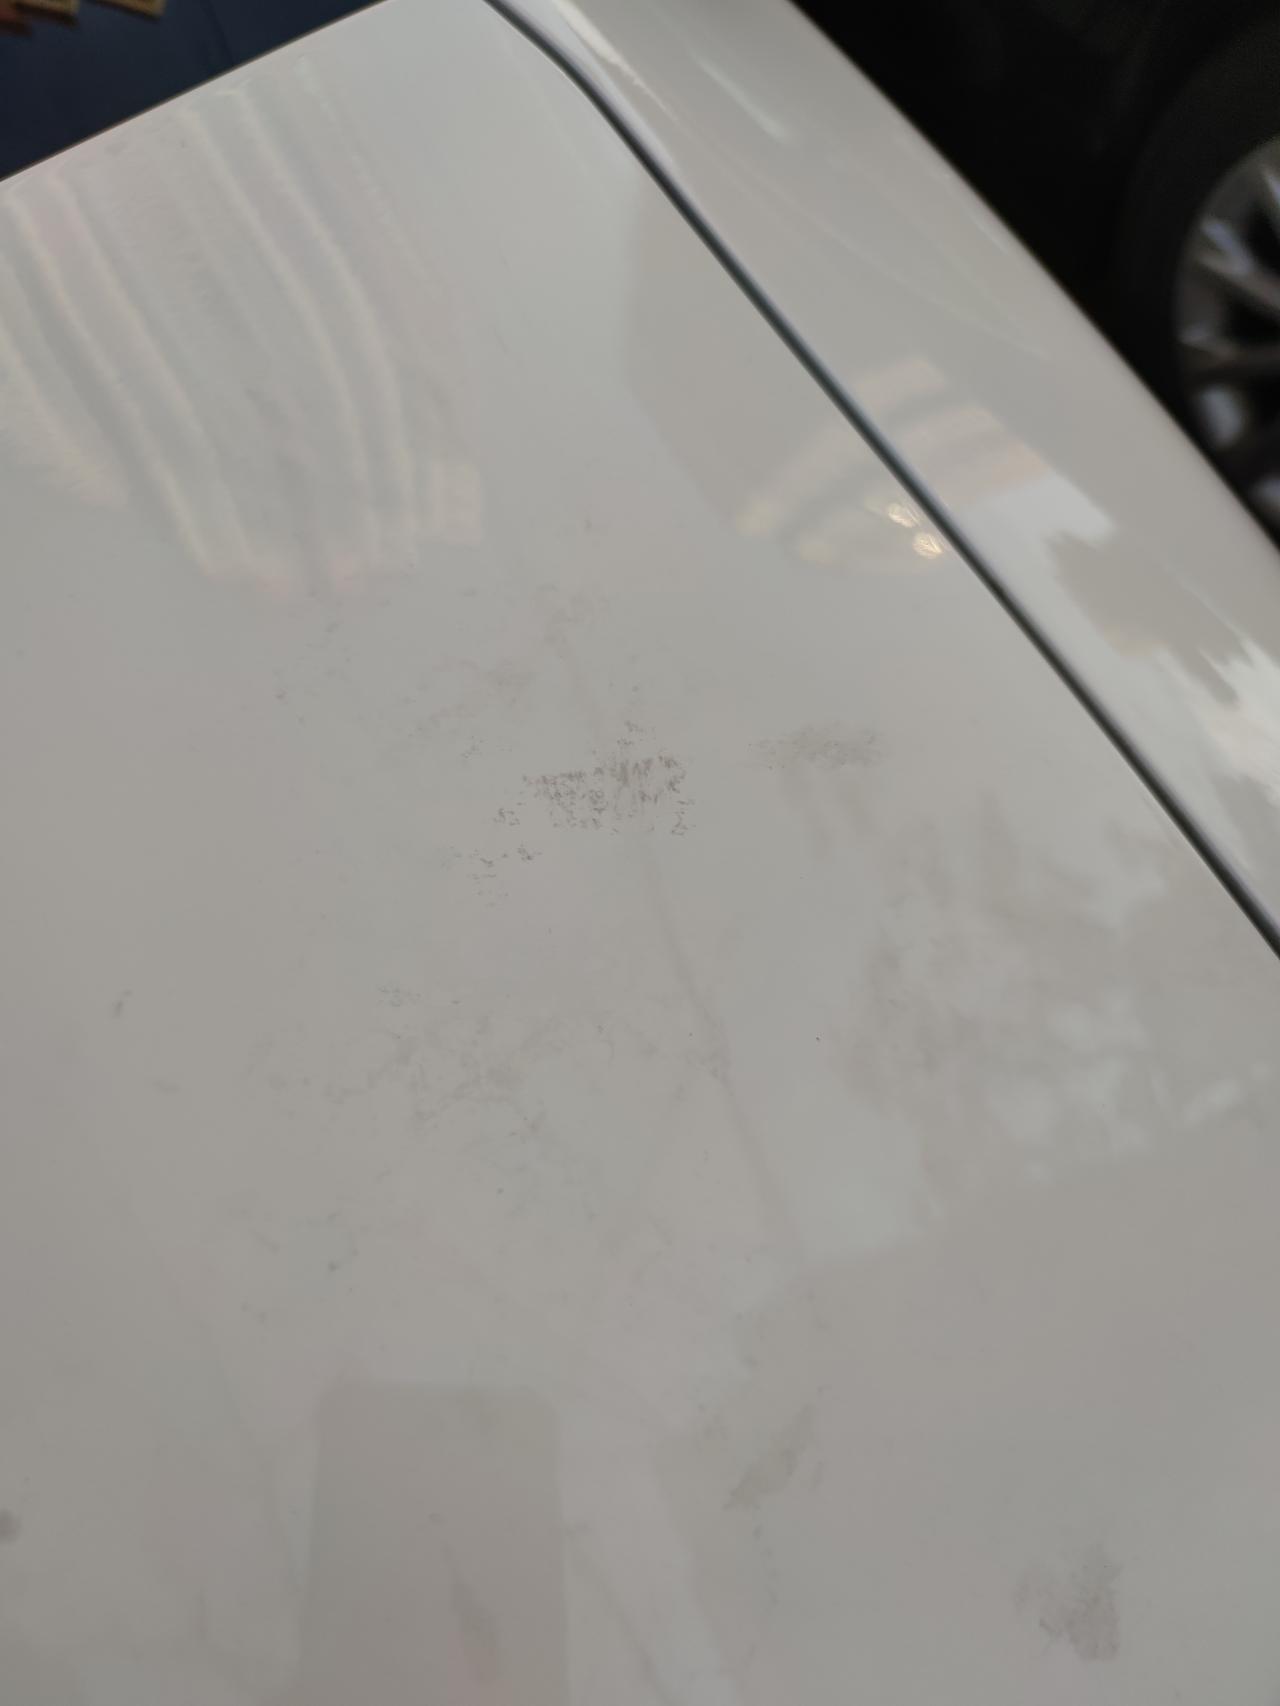 马自达3 昂克赛拉 洗完车发现车上很多这种黑点和脏东西，擦不掉但是能扣掉，估计是跑完高速不洗车造成的。有知道怎么处理的吗